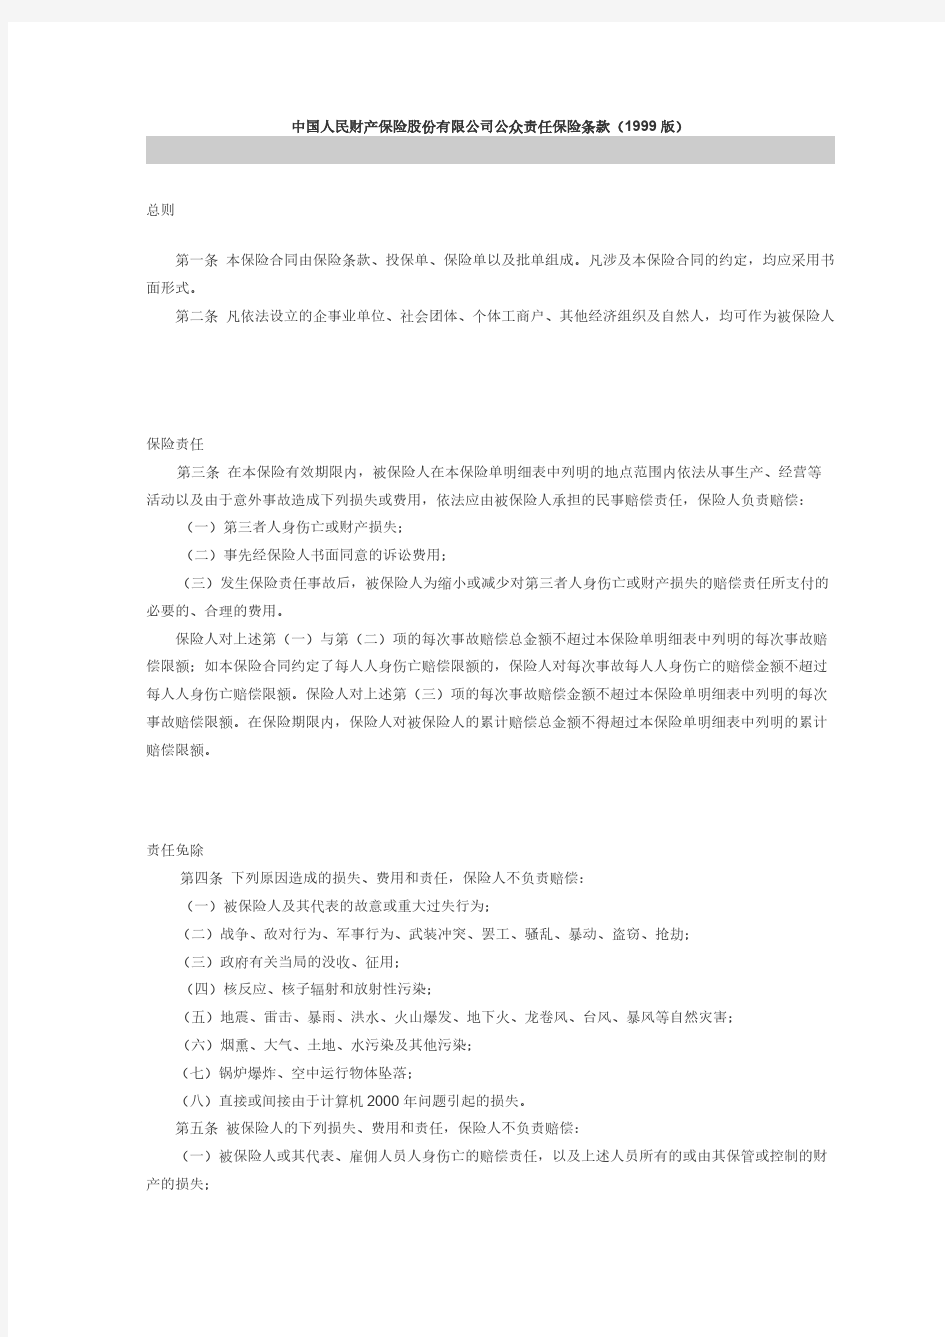 中国人民财产保险股份有限公司公众责任保险条款(1999版)-推荐下载